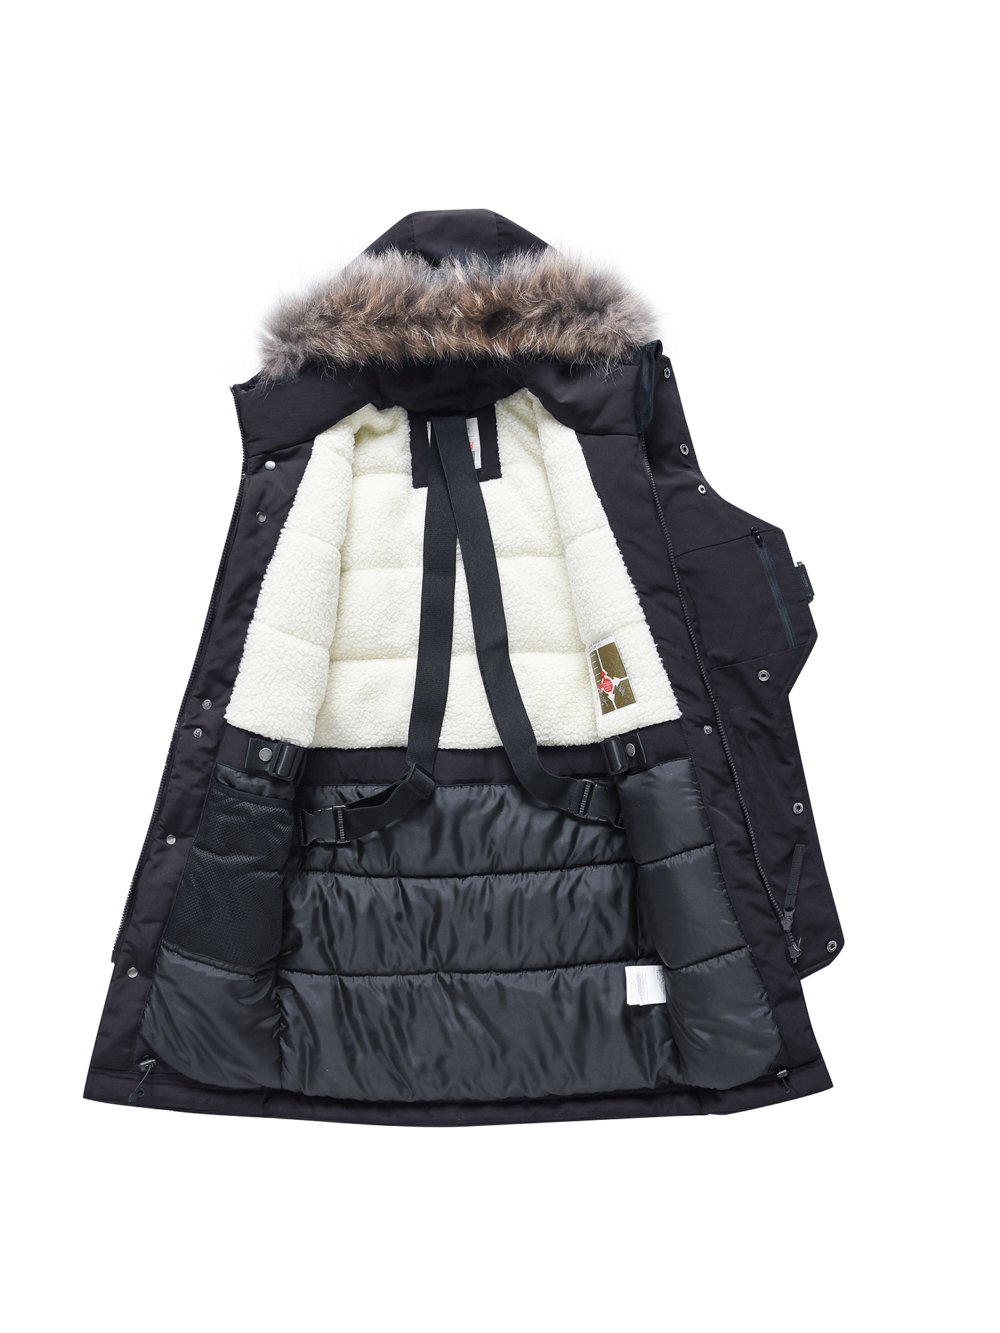 Купить куртку парку для мальчика оптом от производителя недорого в Москве 9341Ch 1